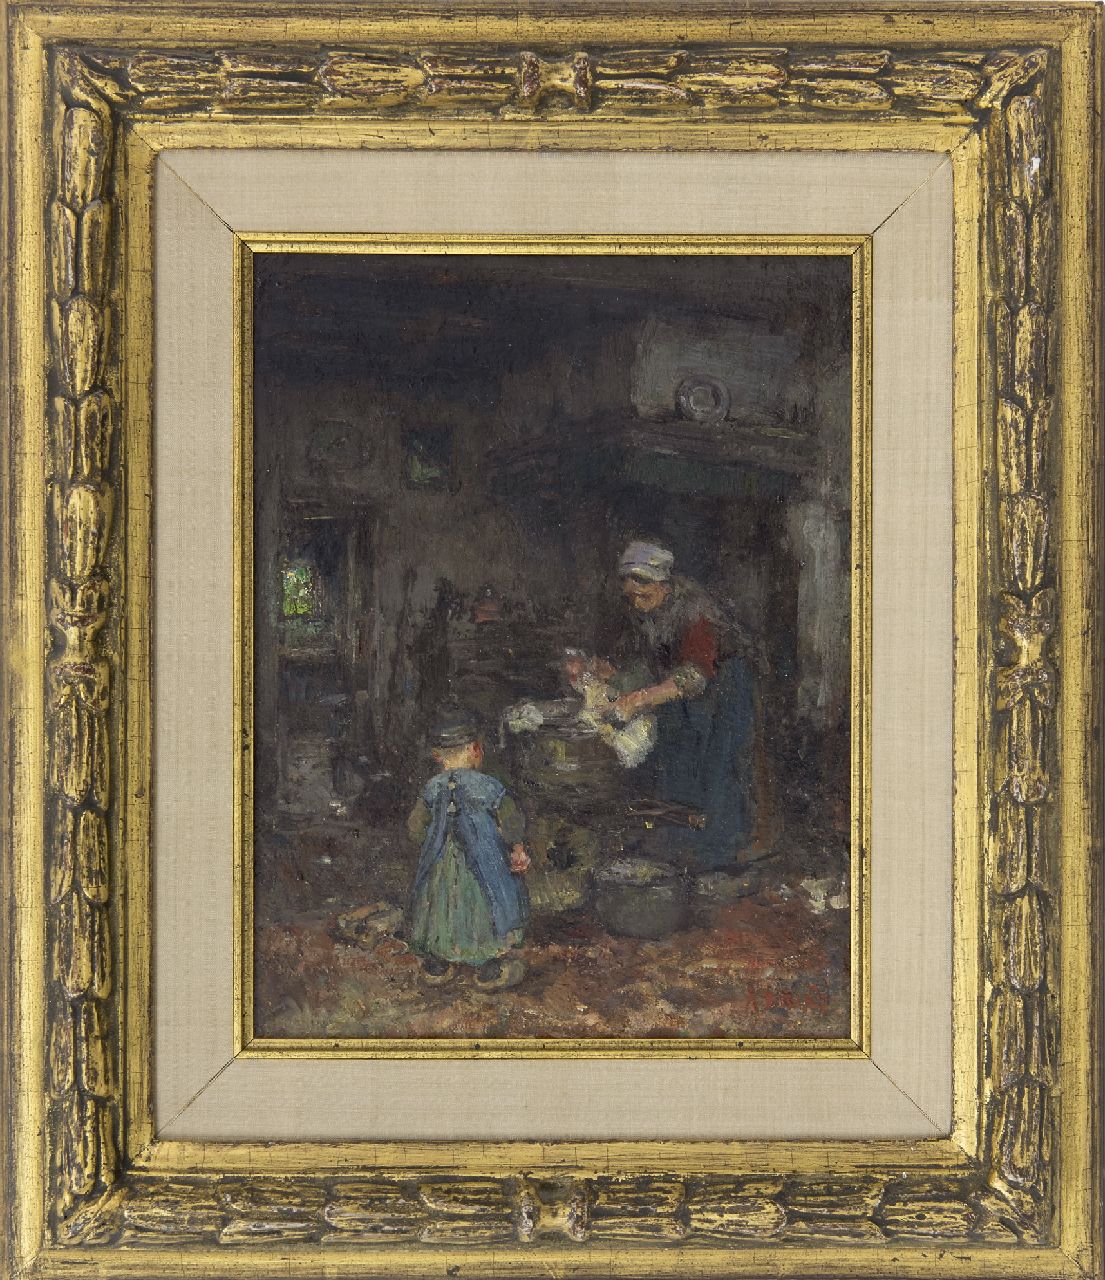 Briët A.H.C.  | 'Arthur' Henri Christiaan Briët | Schilderijen te koop aangeboden | Boereninterieur met moeder en kind, olieverf op board op paneel 29,1 x 22,6 cm, gesigneerd rechtsonder